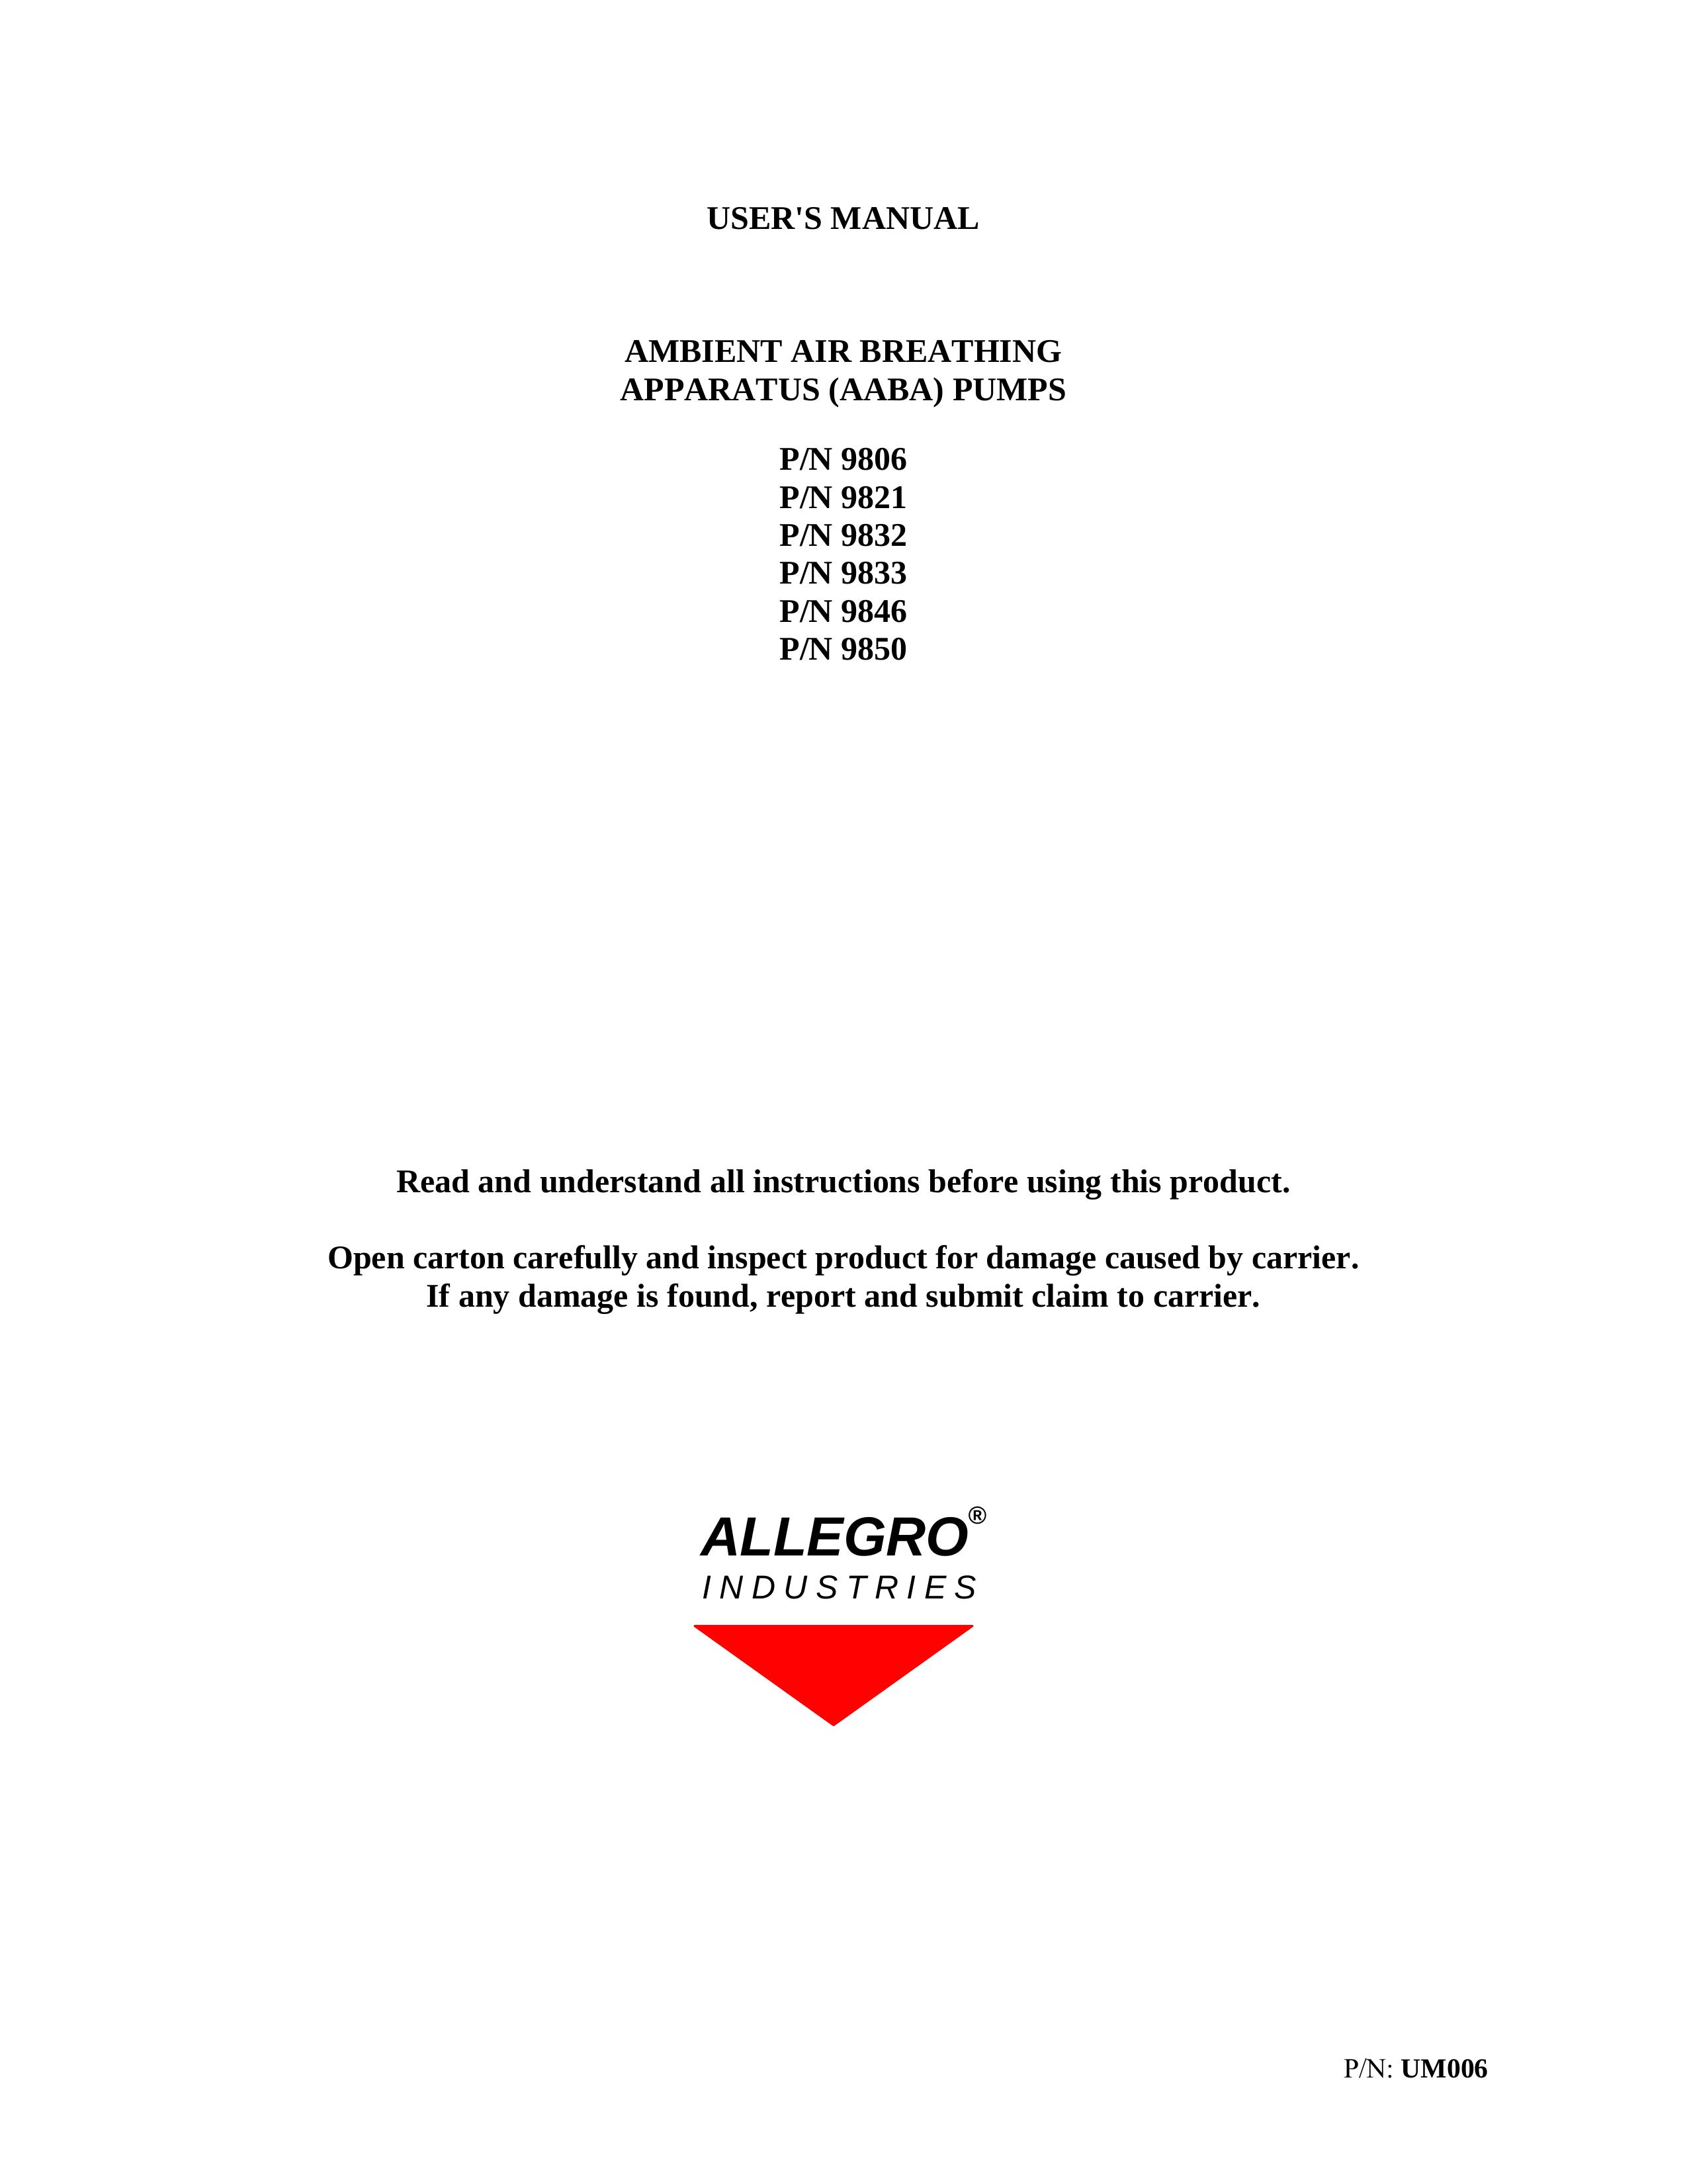 Allegro Industries 9832 Oxygen Equipment User Manual